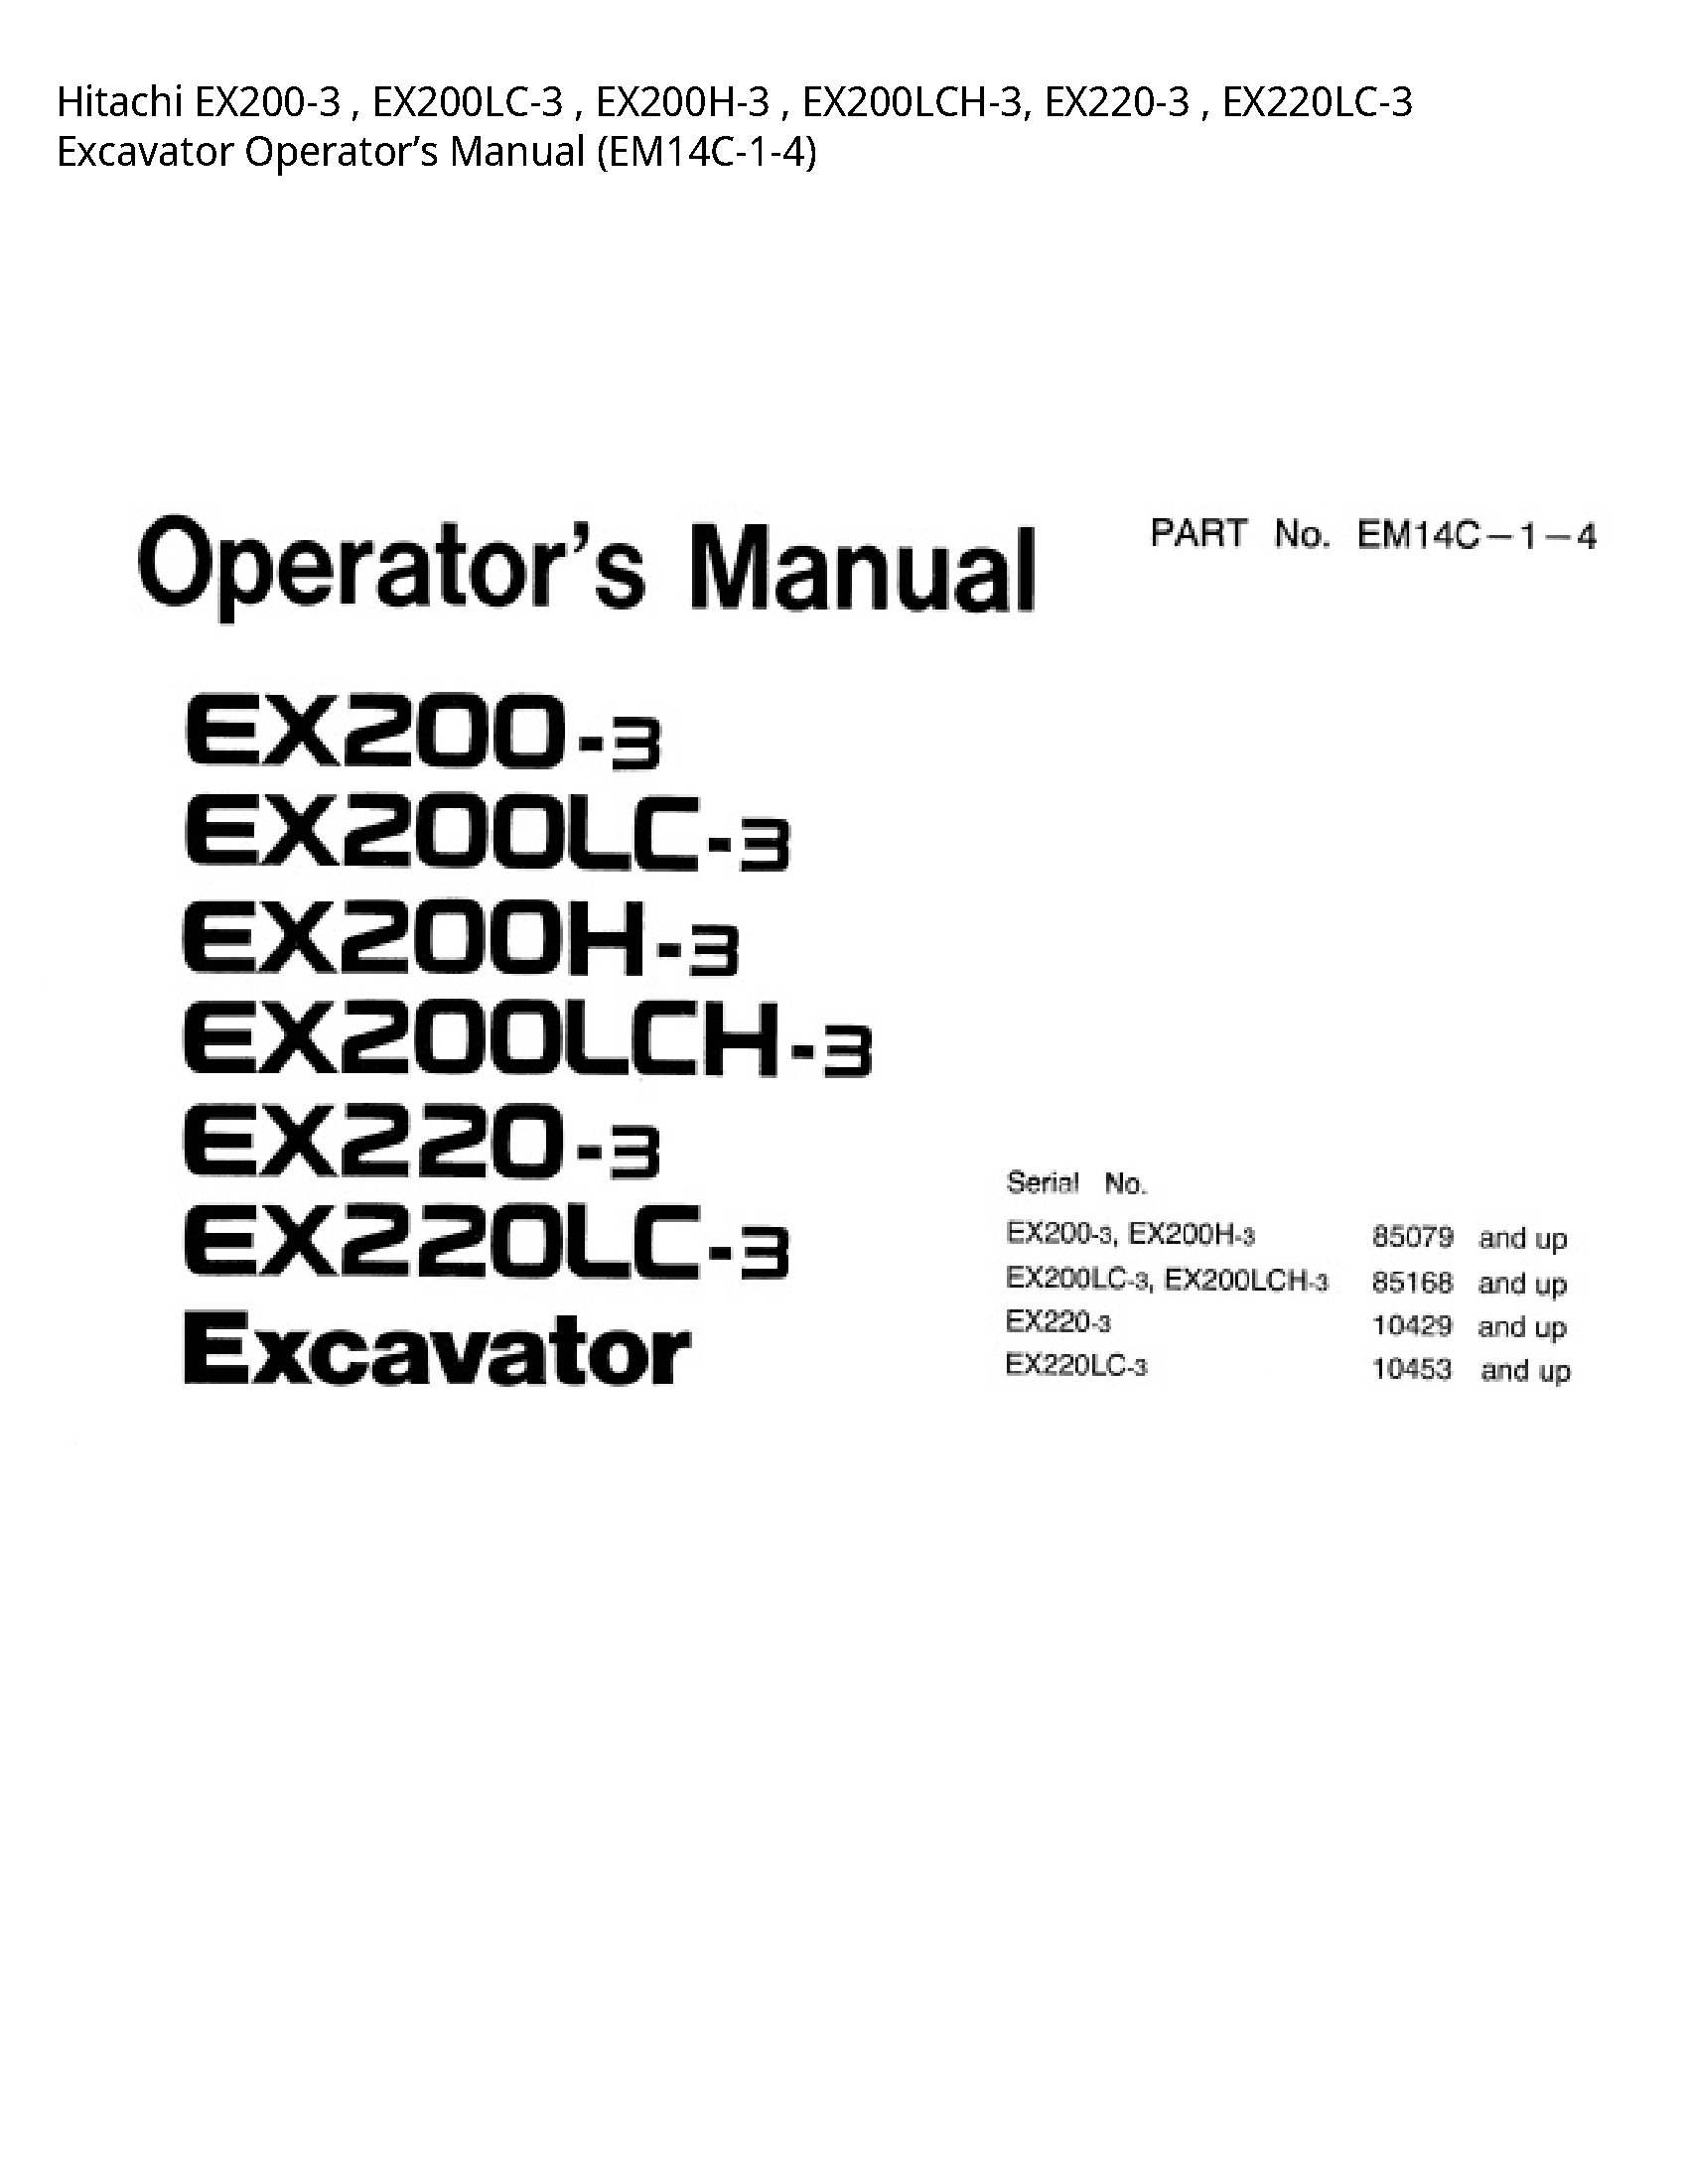 Hitachi EX200-3 Excavator Operator’s manual